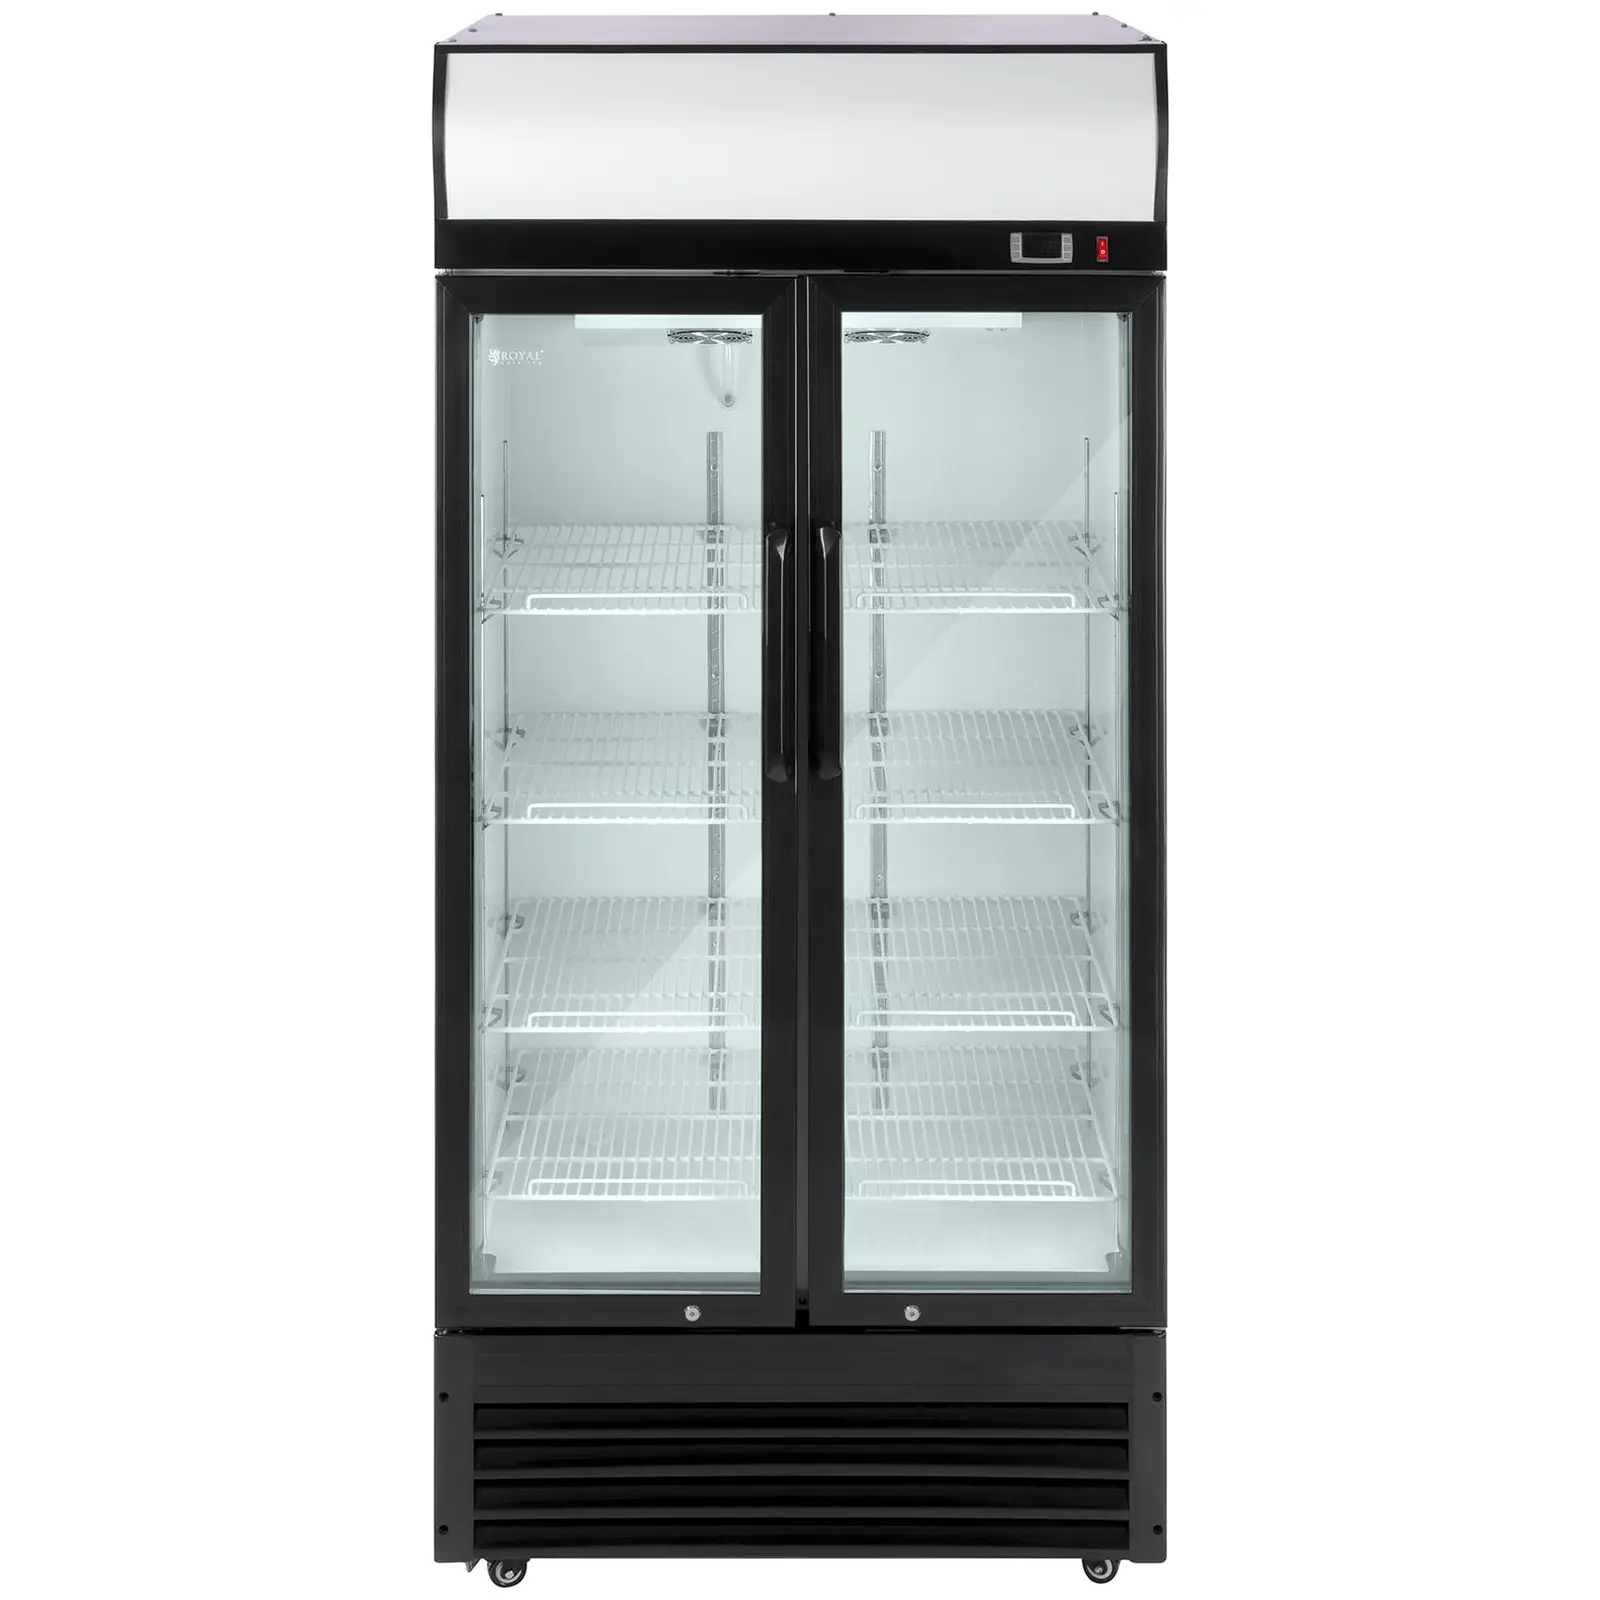 Arca refrigeradora - 630 l